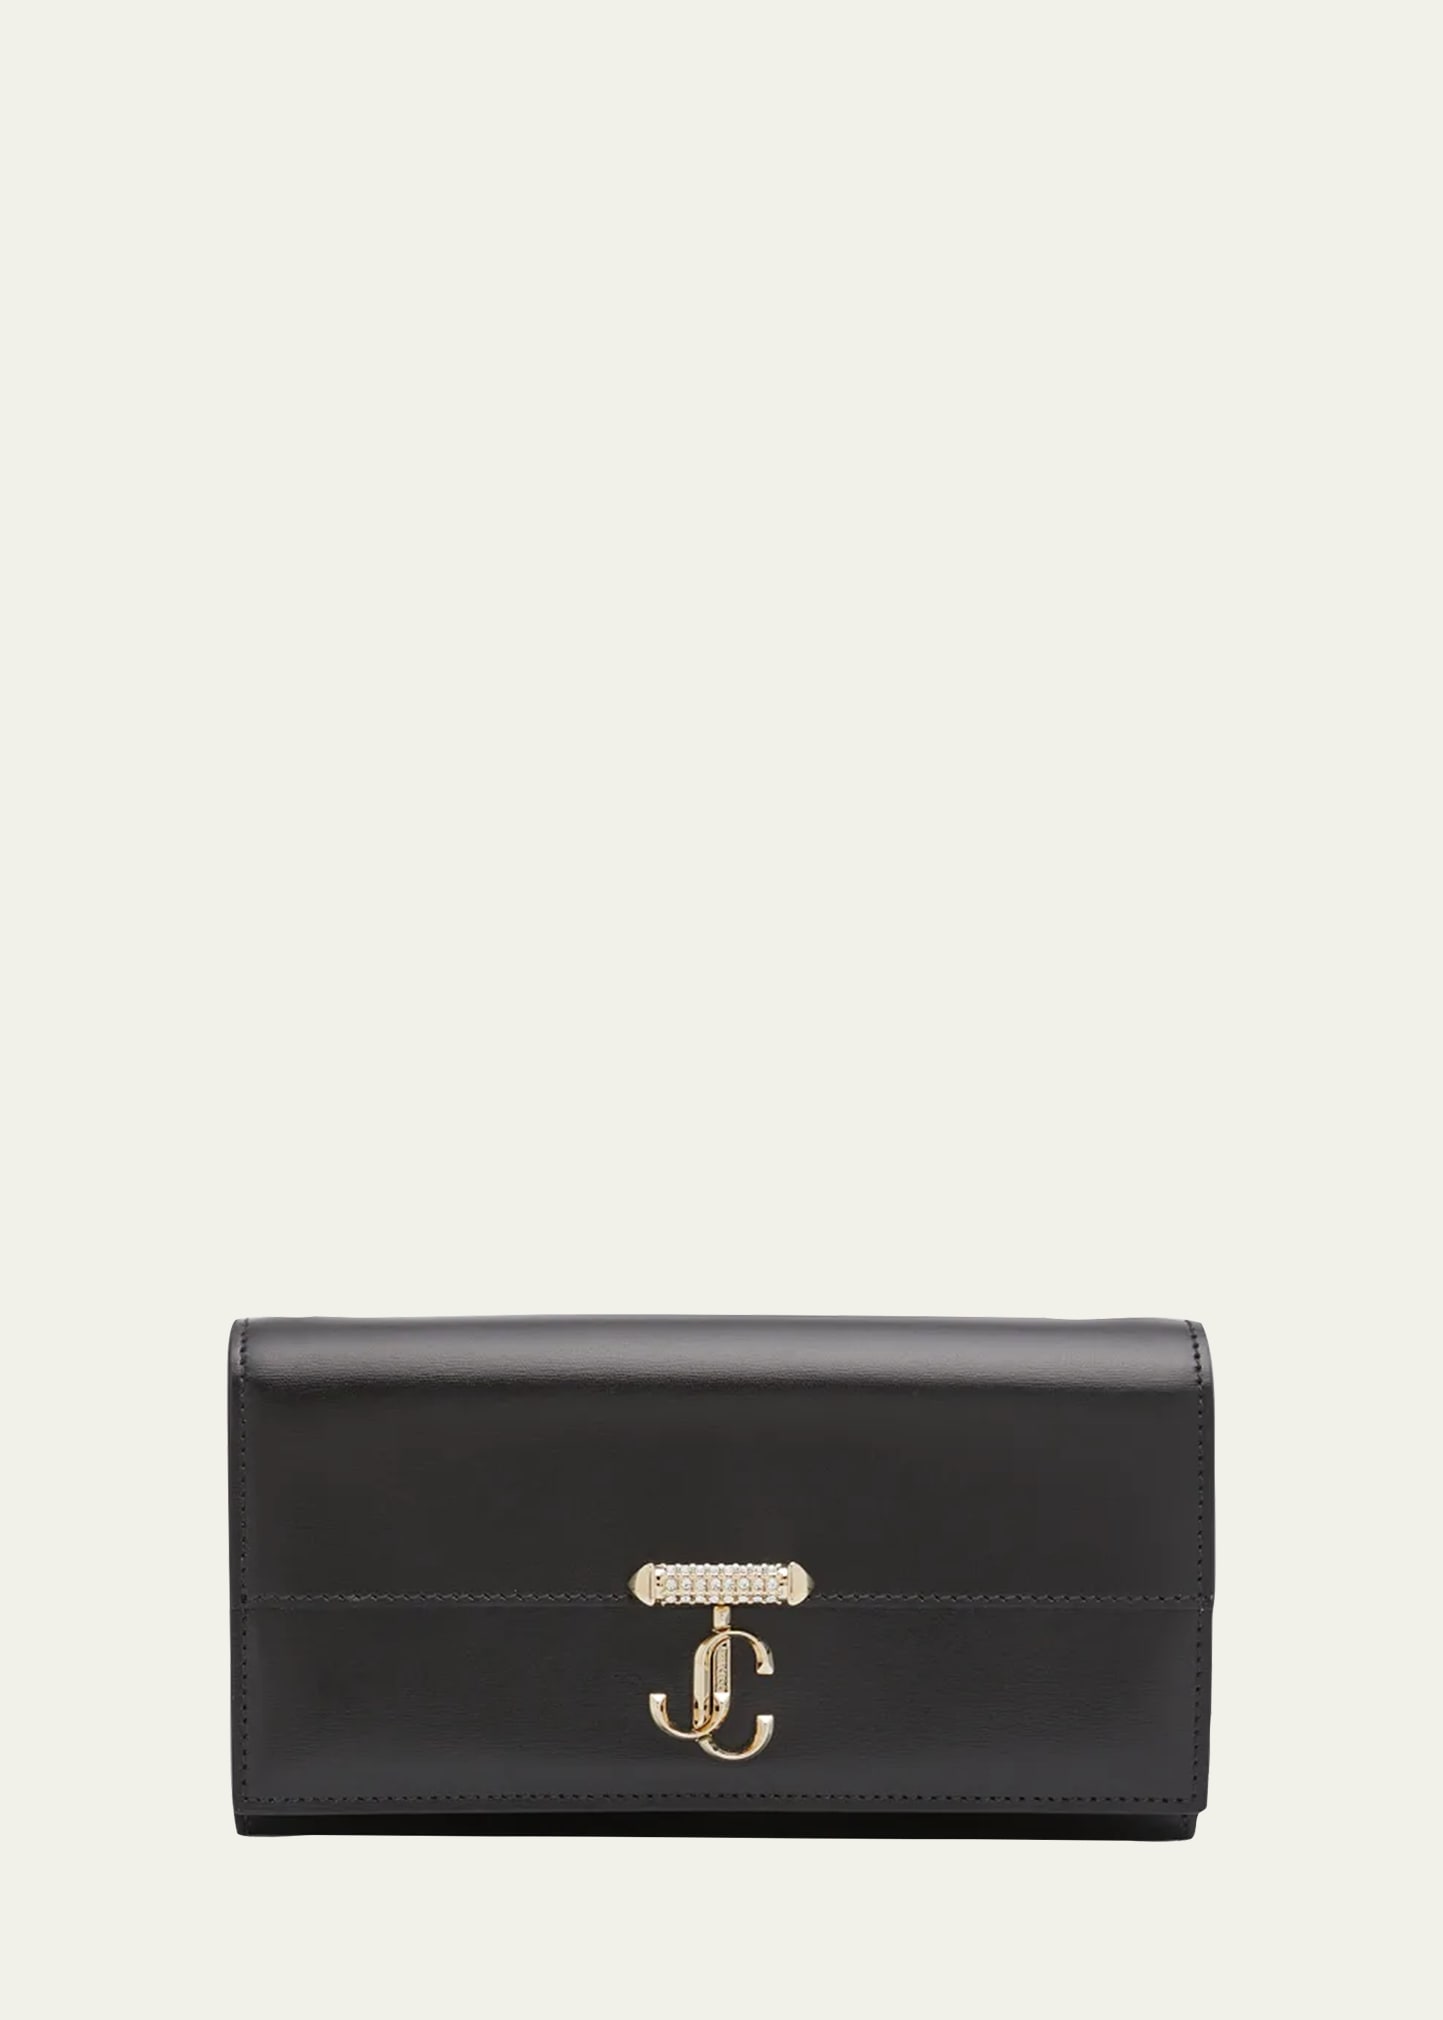 Shop Jimmy Choo Varenne Leather Wallet With Embellished Strap In Black Light Gold